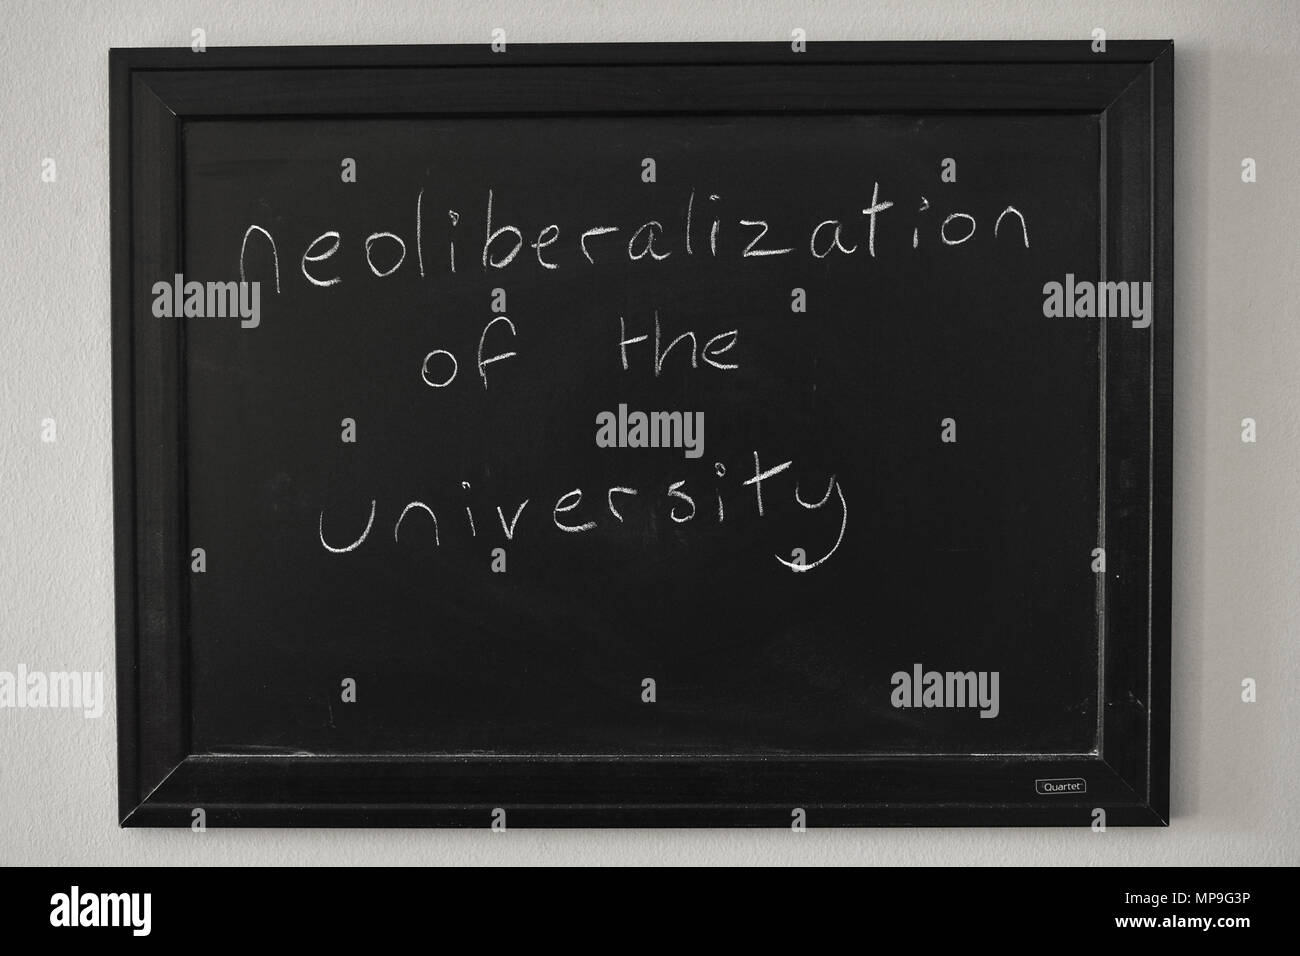 Neoliberalismo de la universidad escritas en blanco tiza en una pizarra en la pared. Foto de stock